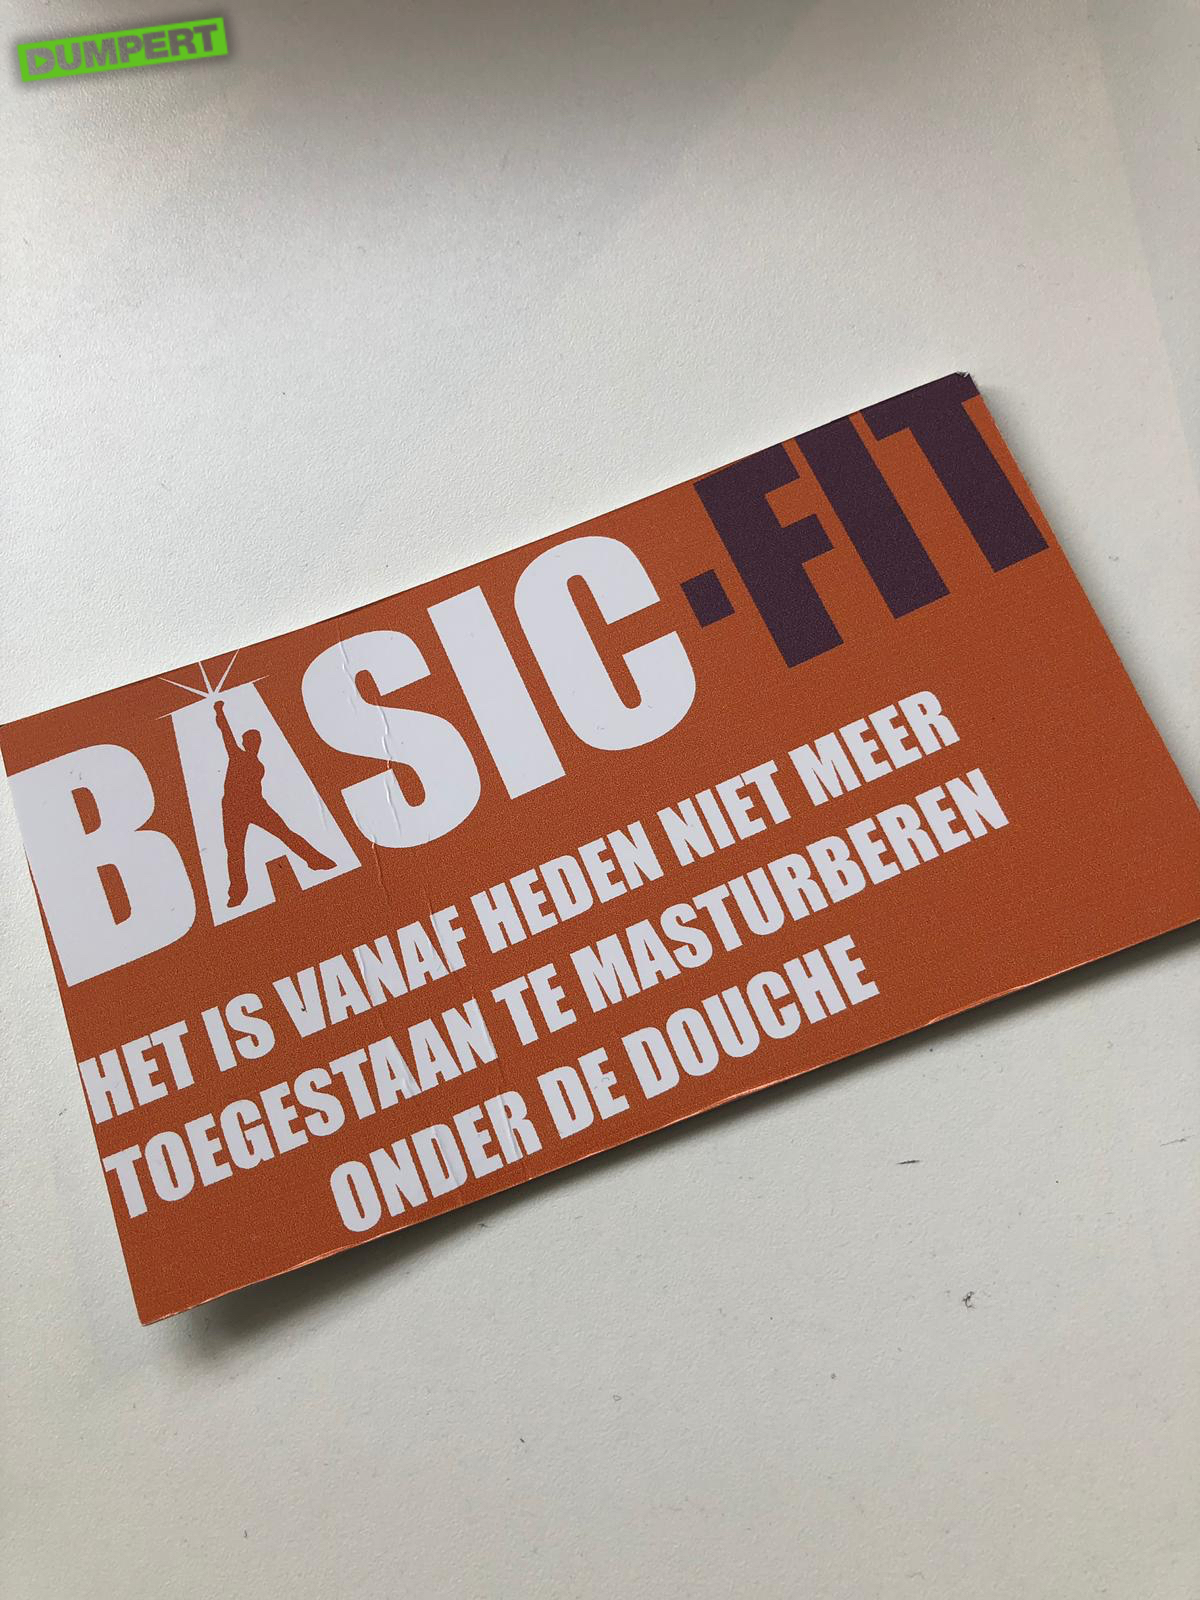 Verwijdering thema stuiten op dumpert.nl - Basic-Fit neemt maatregelen